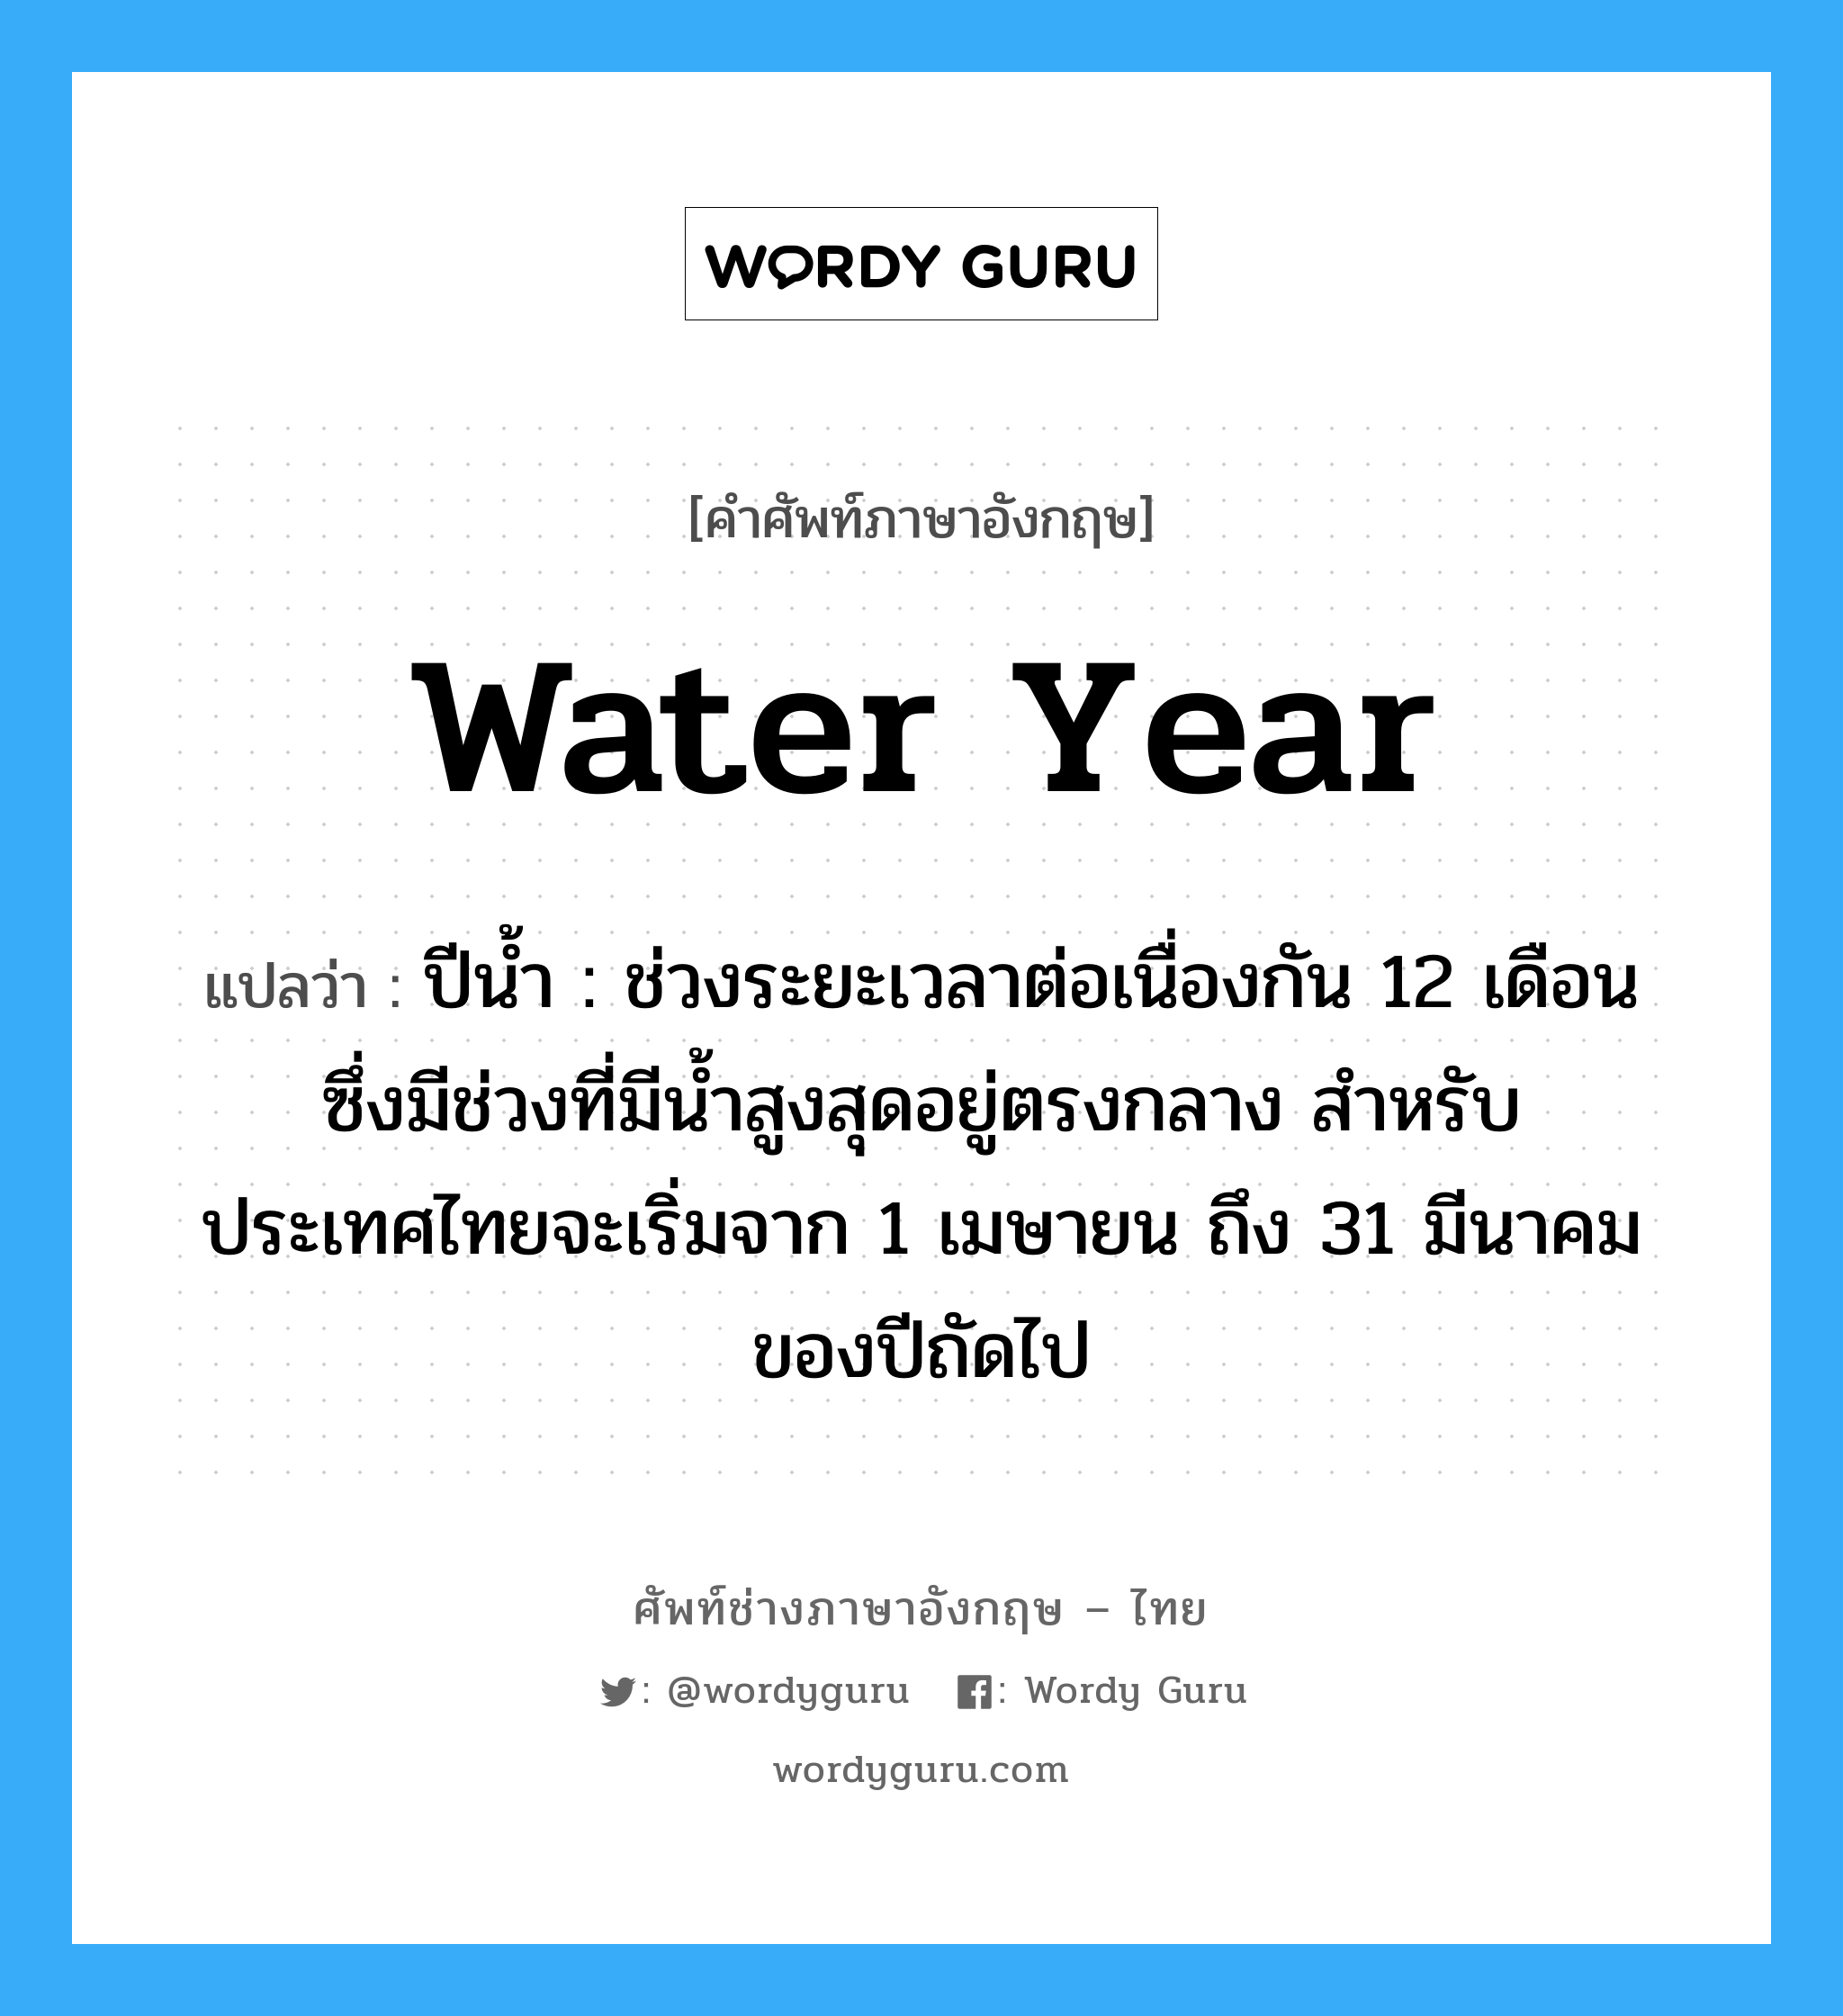 ปีน้ำ : ช่วงระยะเวลาต่อเนื่องกัน 12 เดือน ซึ่งมีช่วงที่มีน้ำสูงสุดอยู่ตรงกลาง สำหรับประเทศไทยจะเริ่มจาก 1 เมษายน ถึง 31 มีนาคมของปีถัดไป ภาษาอังกฤษ?, คำศัพท์ช่างภาษาอังกฤษ - ไทย ปีน้ำ : ช่วงระยะเวลาต่อเนื่องกัน 12 เดือน ซึ่งมีช่วงที่มีน้ำสูงสุดอยู่ตรงกลาง สำหรับประเทศไทยจะเริ่มจาก 1 เมษายน ถึง 31 มีนาคมของปีถัดไป คำศัพท์ภาษาอังกฤษ ปีน้ำ : ช่วงระยะเวลาต่อเนื่องกัน 12 เดือน ซึ่งมีช่วงที่มีน้ำสูงสุดอยู่ตรงกลาง สำหรับประเทศไทยจะเริ่มจาก 1 เมษายน ถึง 31 มีนาคมของปีถัดไป แปลว่า water year